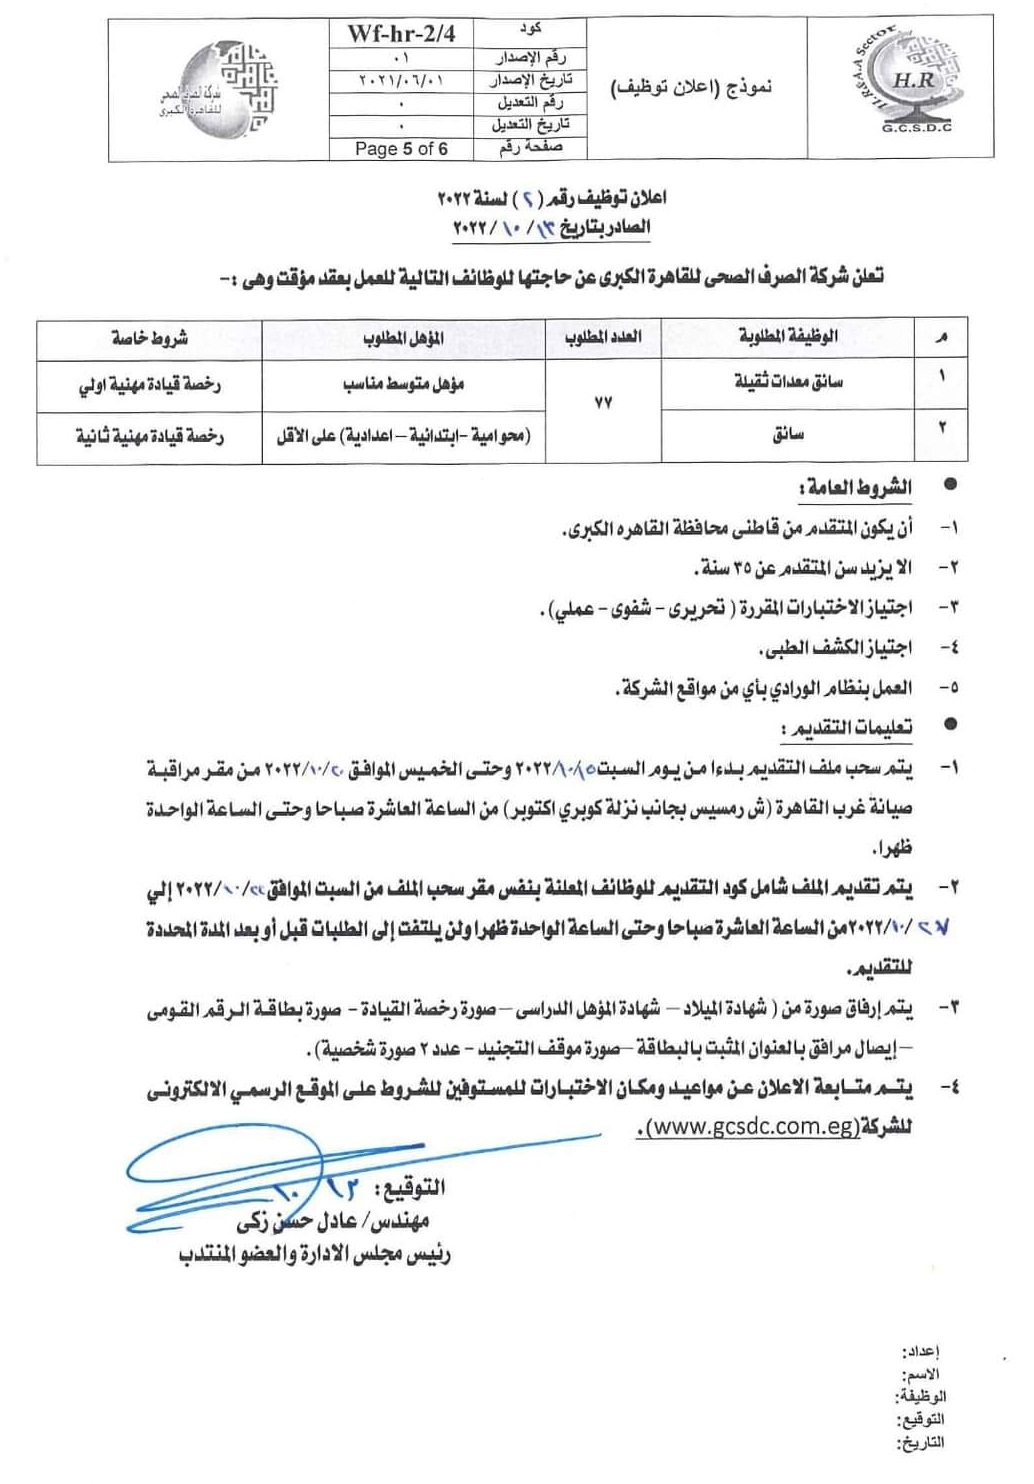 اعلان وظائف شركة الصرف الصحى للقاهرة الكبرى - للدبلومات - ومحو الامية - والابتدائية - الاعدادية - والتقديم حتى 27 أكتوبر